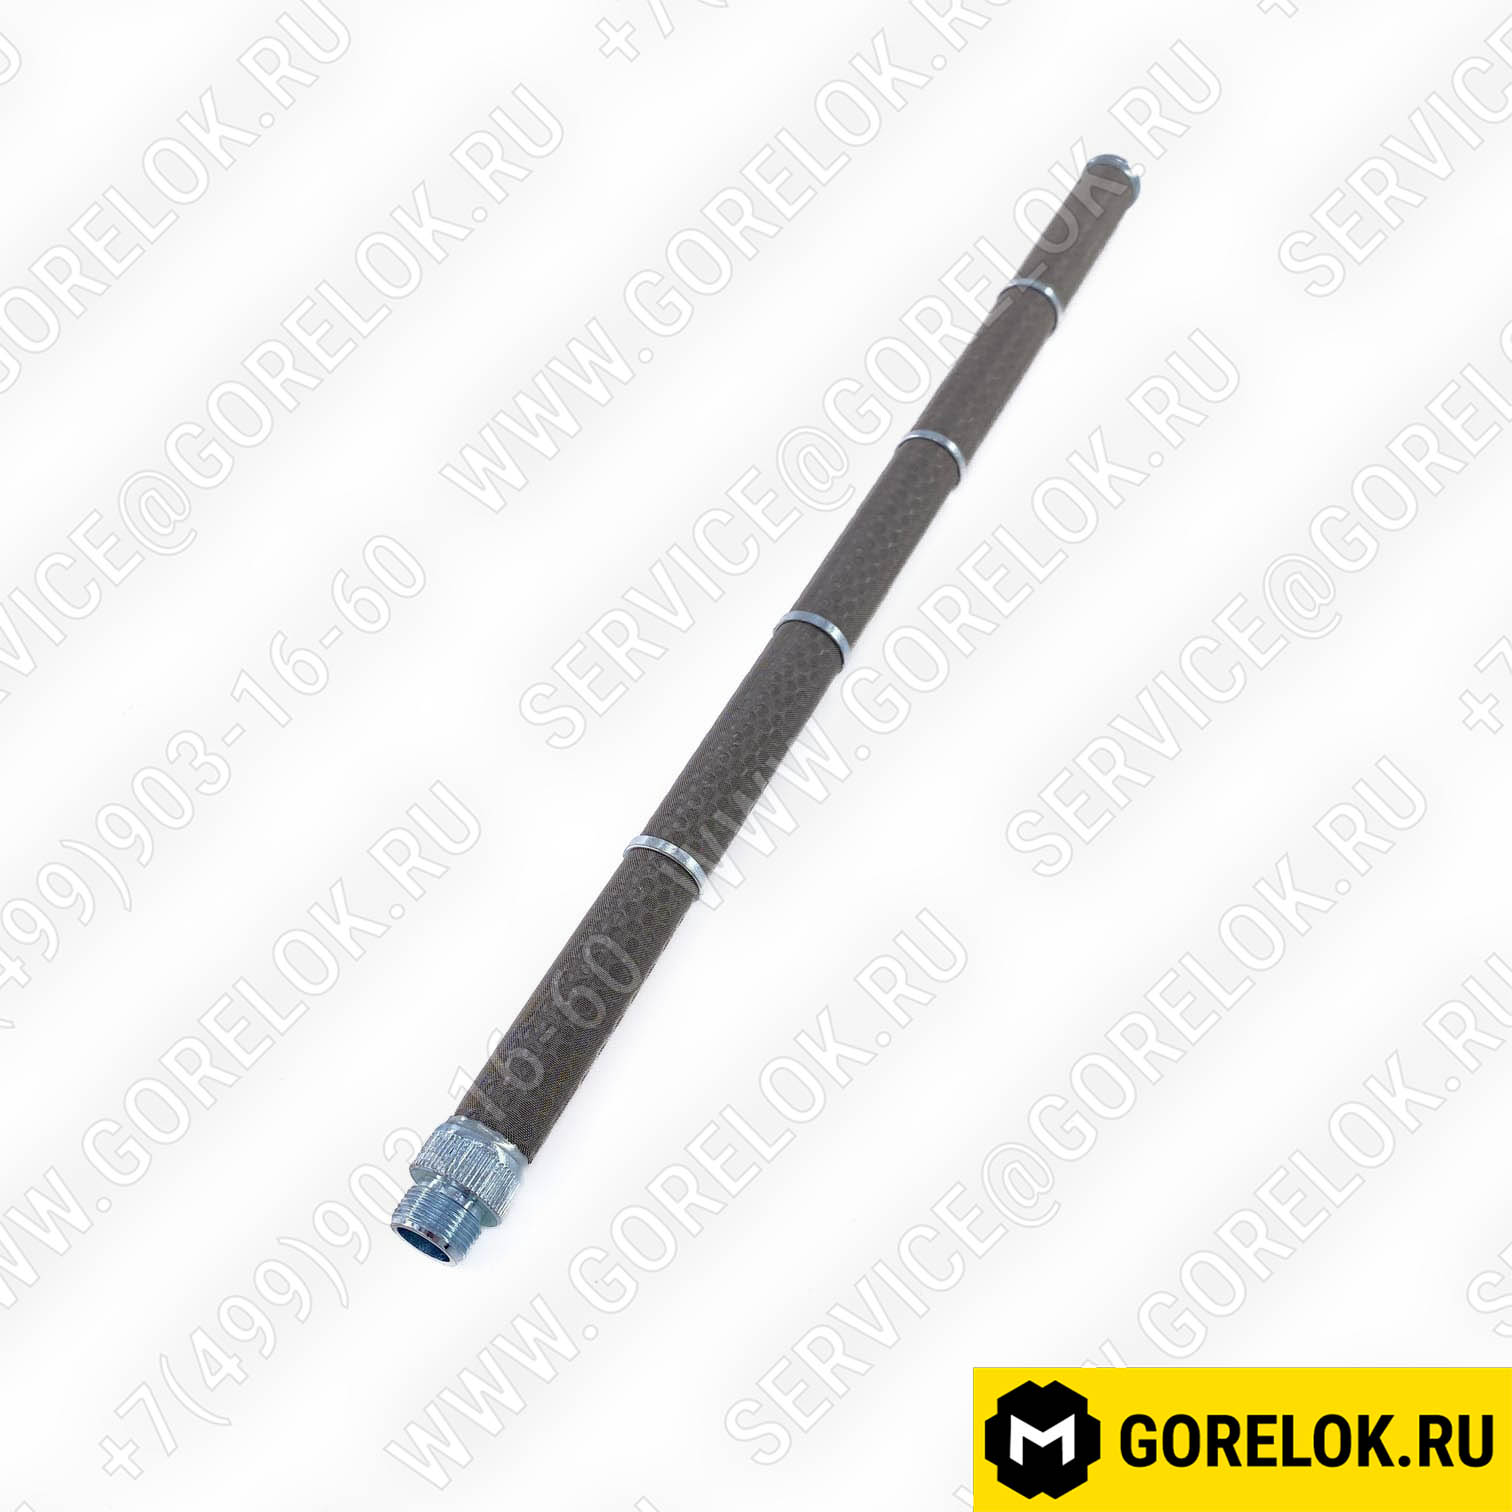 Трубный фильтр Ø20 X 380 мм : 65321171, BFP01114, 400010050300